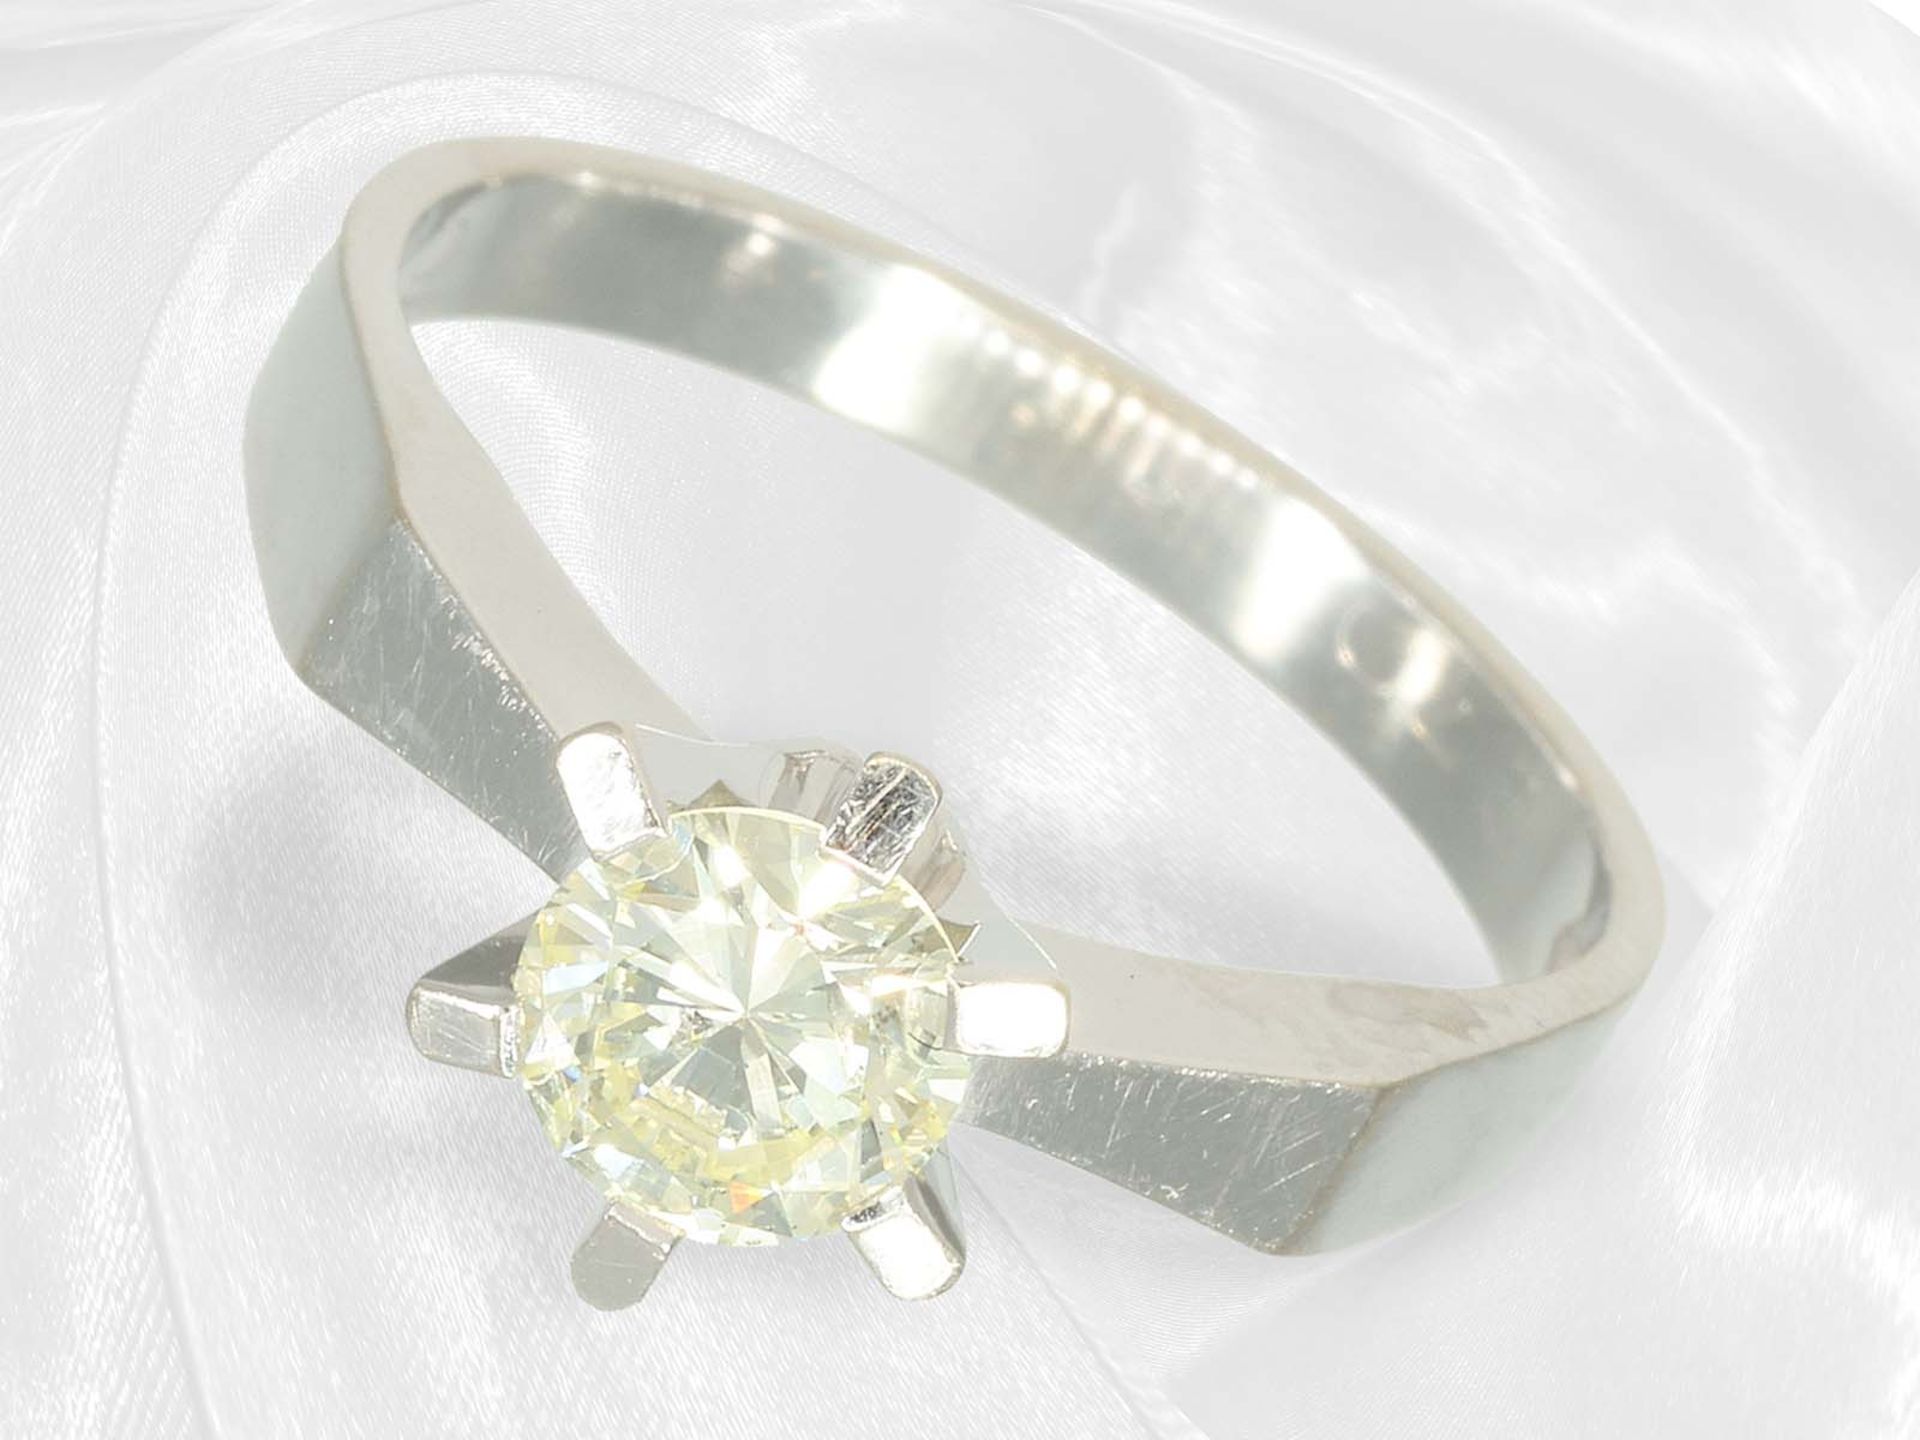 Vintage solitaire brilliant-cut diamond goldsmith ring, approx. 0.7ct brilliant-cut diamond - Image 2 of 4